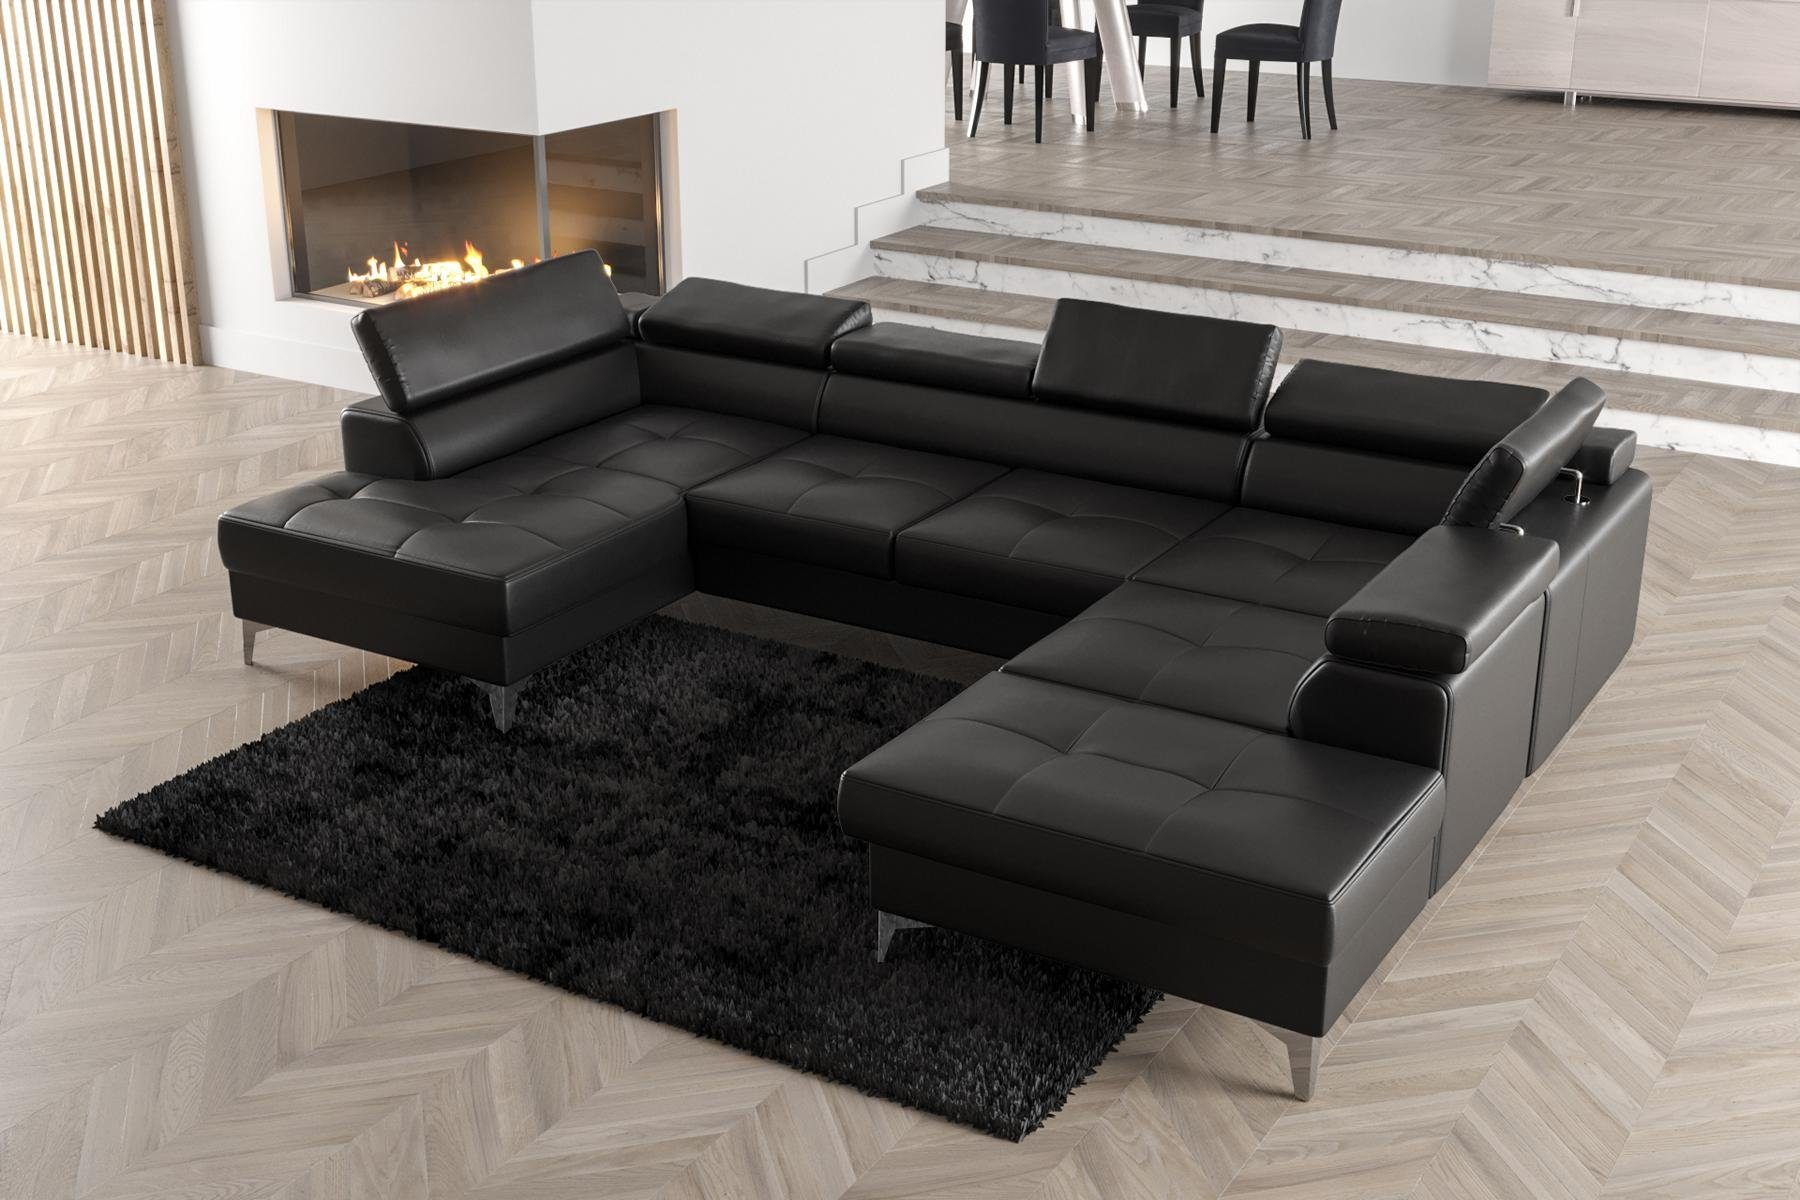 JVmoebel Ecksofa Modernes Design Polsterung Couch Wohnzimmer Ecksofa U-Form, Made in Europe Schwarz